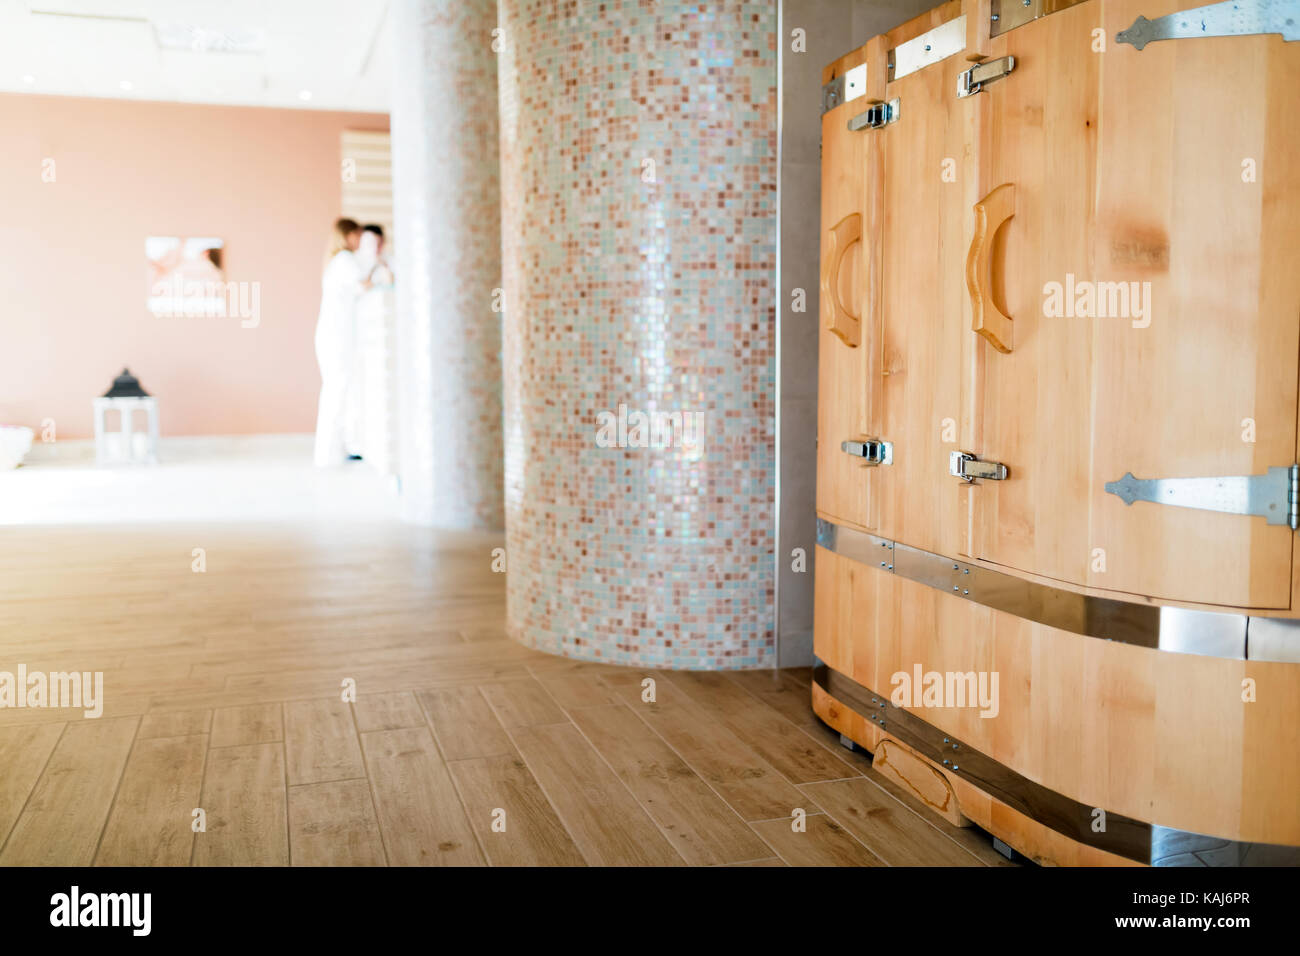 Canna di cedro sauna nuova forma di trattamento Foto Stock